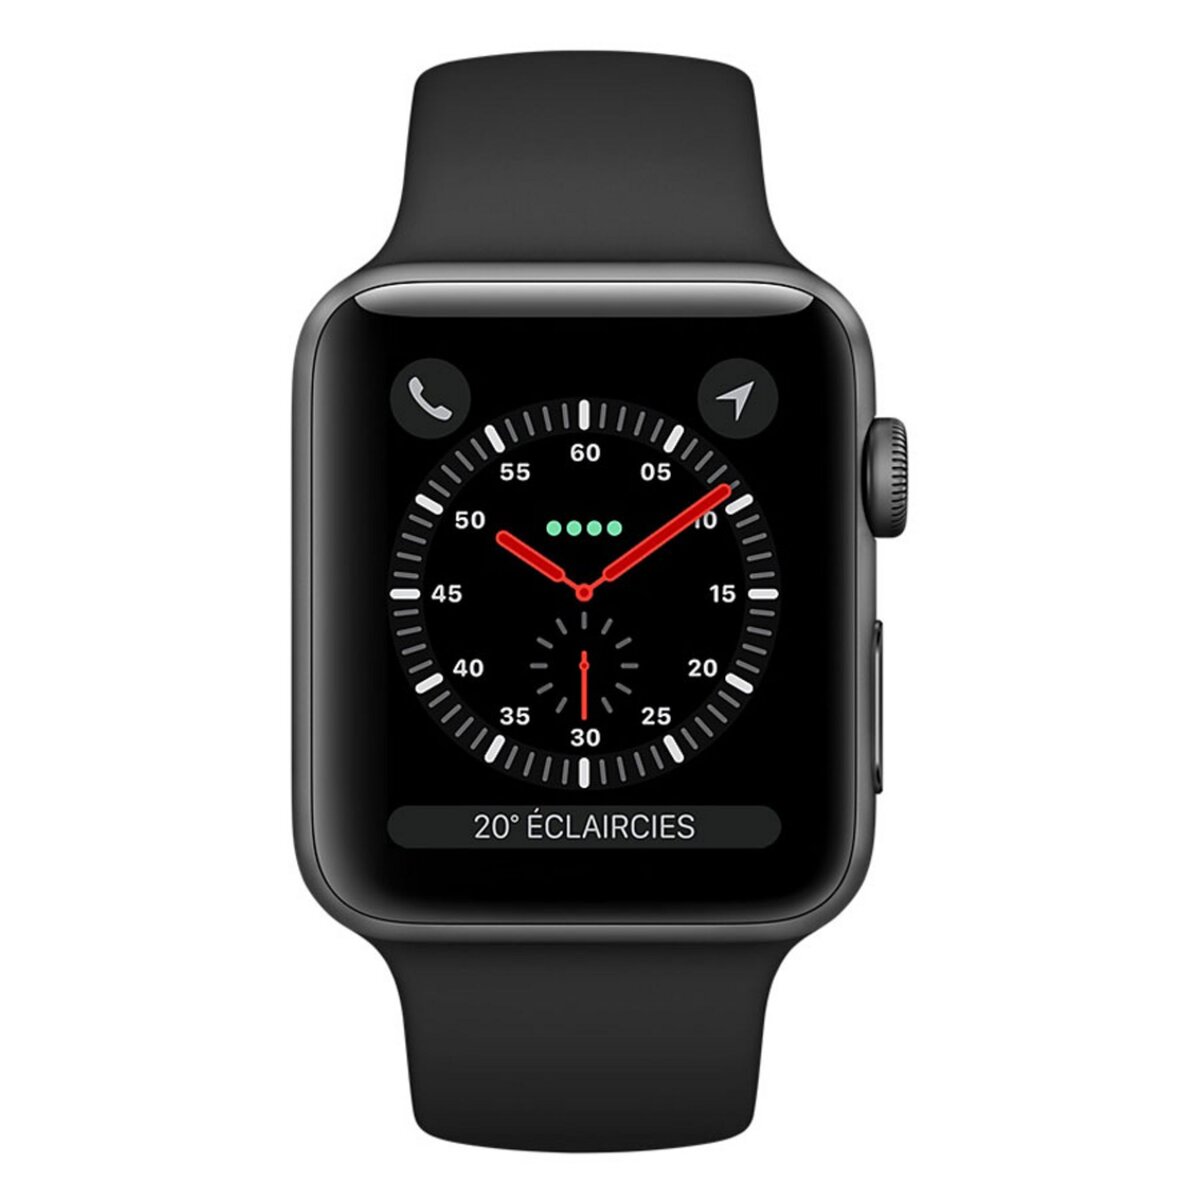 APPLE Montre connectée - Apple watch SERIE 3 GPS + Cellular - Gris/noir - Wifi - Bluetooth